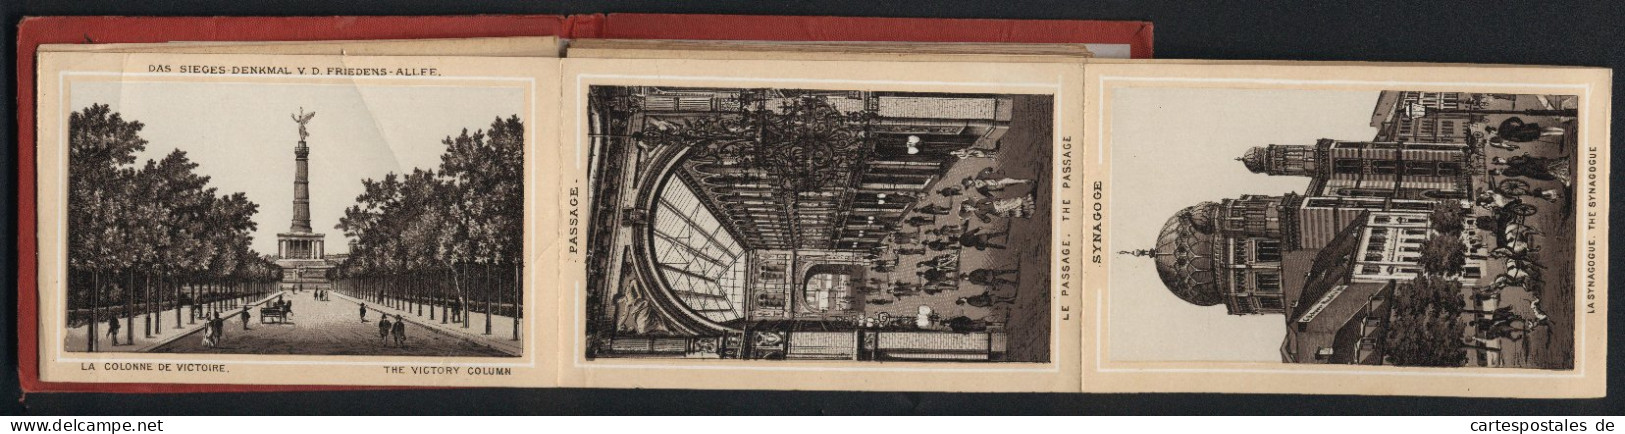 Leporello-Album Berlin Mit 25 Lithographie-Ansichten, Synagoge, Mausoleum, Flora Charlottenburg, Bahnhof Friedrichstra  - Litografía